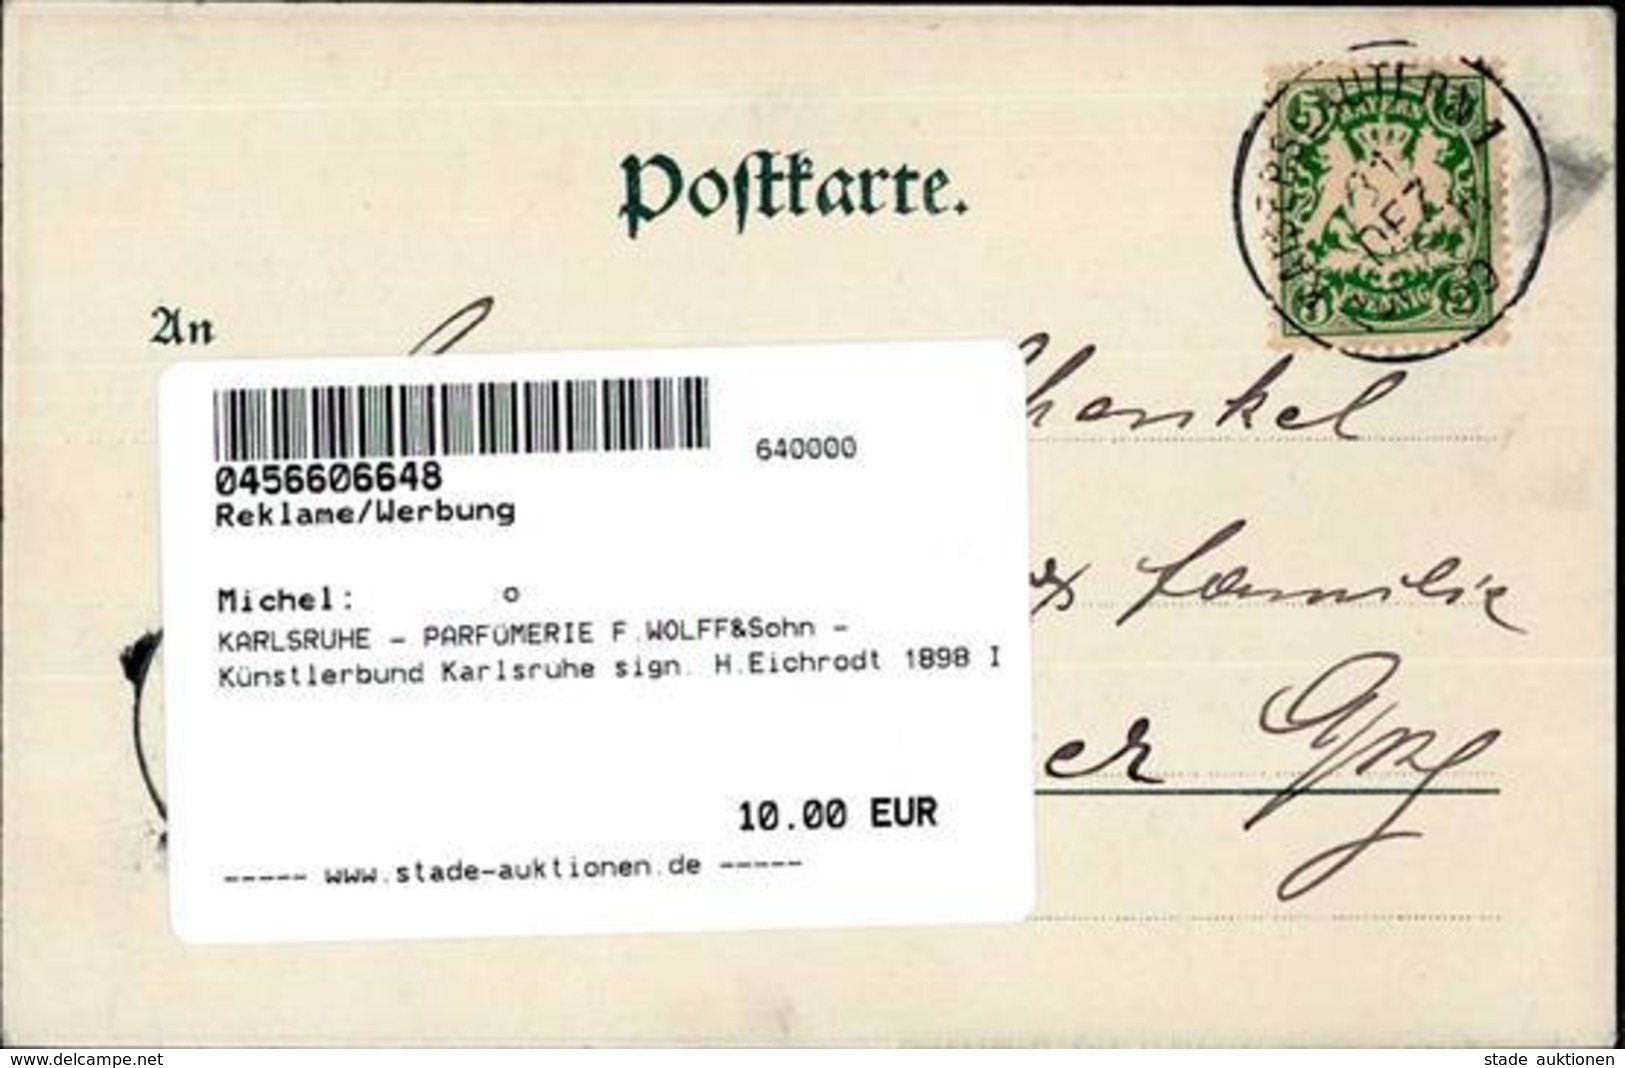 KARLSRUHE - PARFÜMERIE F.WOLFF&Sohn - Künstlerbund Karlsruhe Sign. H.Eichrodt 1898 I - Advertising